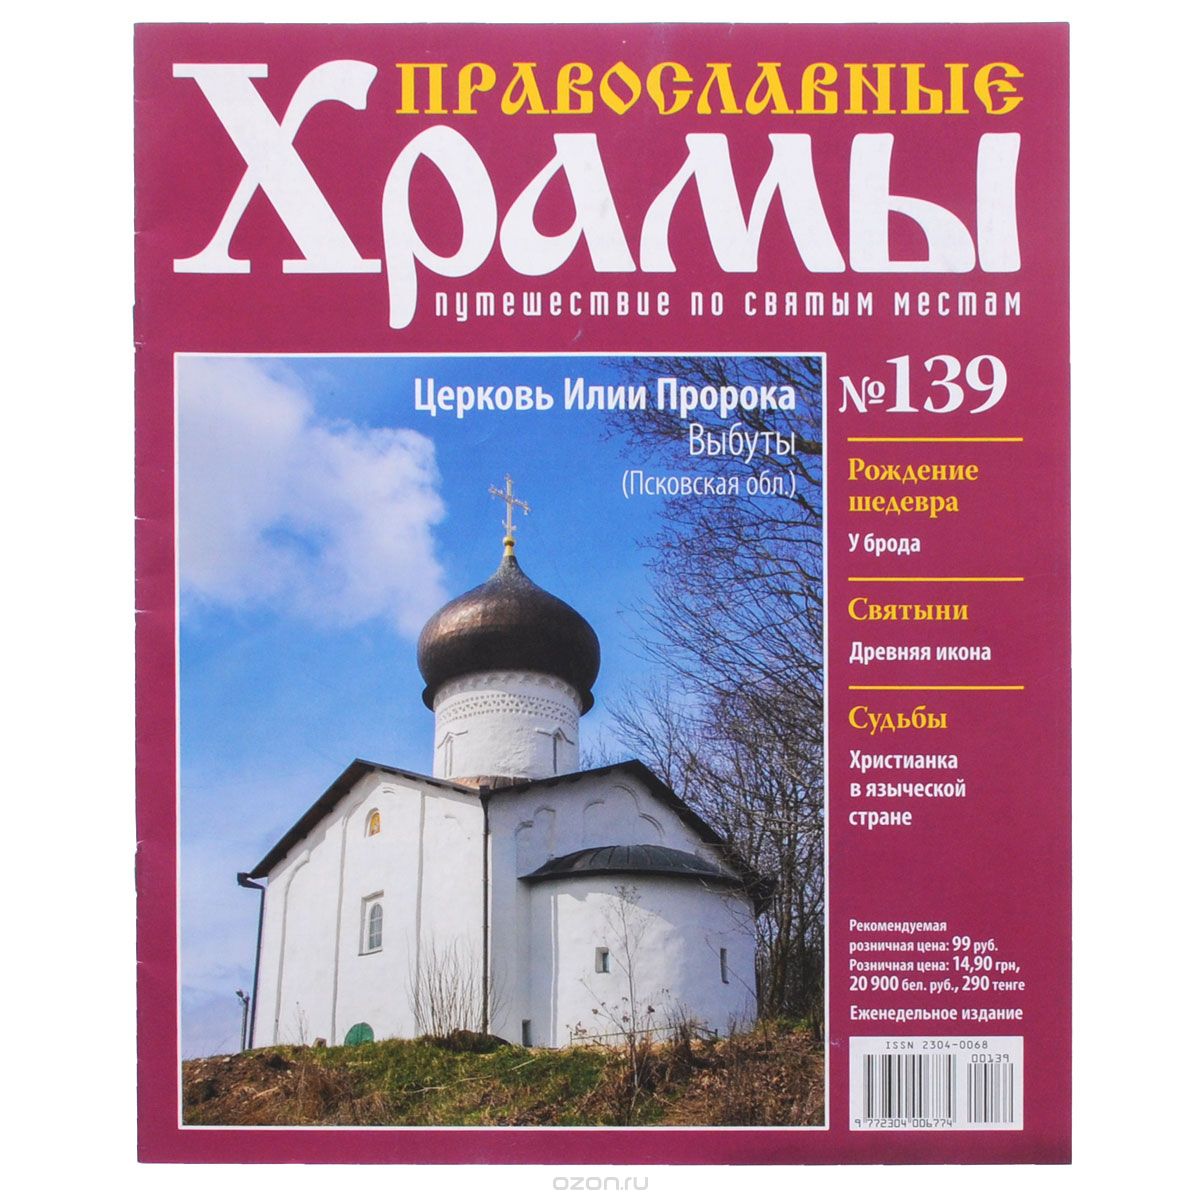 Скачать книгу "Журнал "Православные храмы. Путешествие по святым местам" № 139"